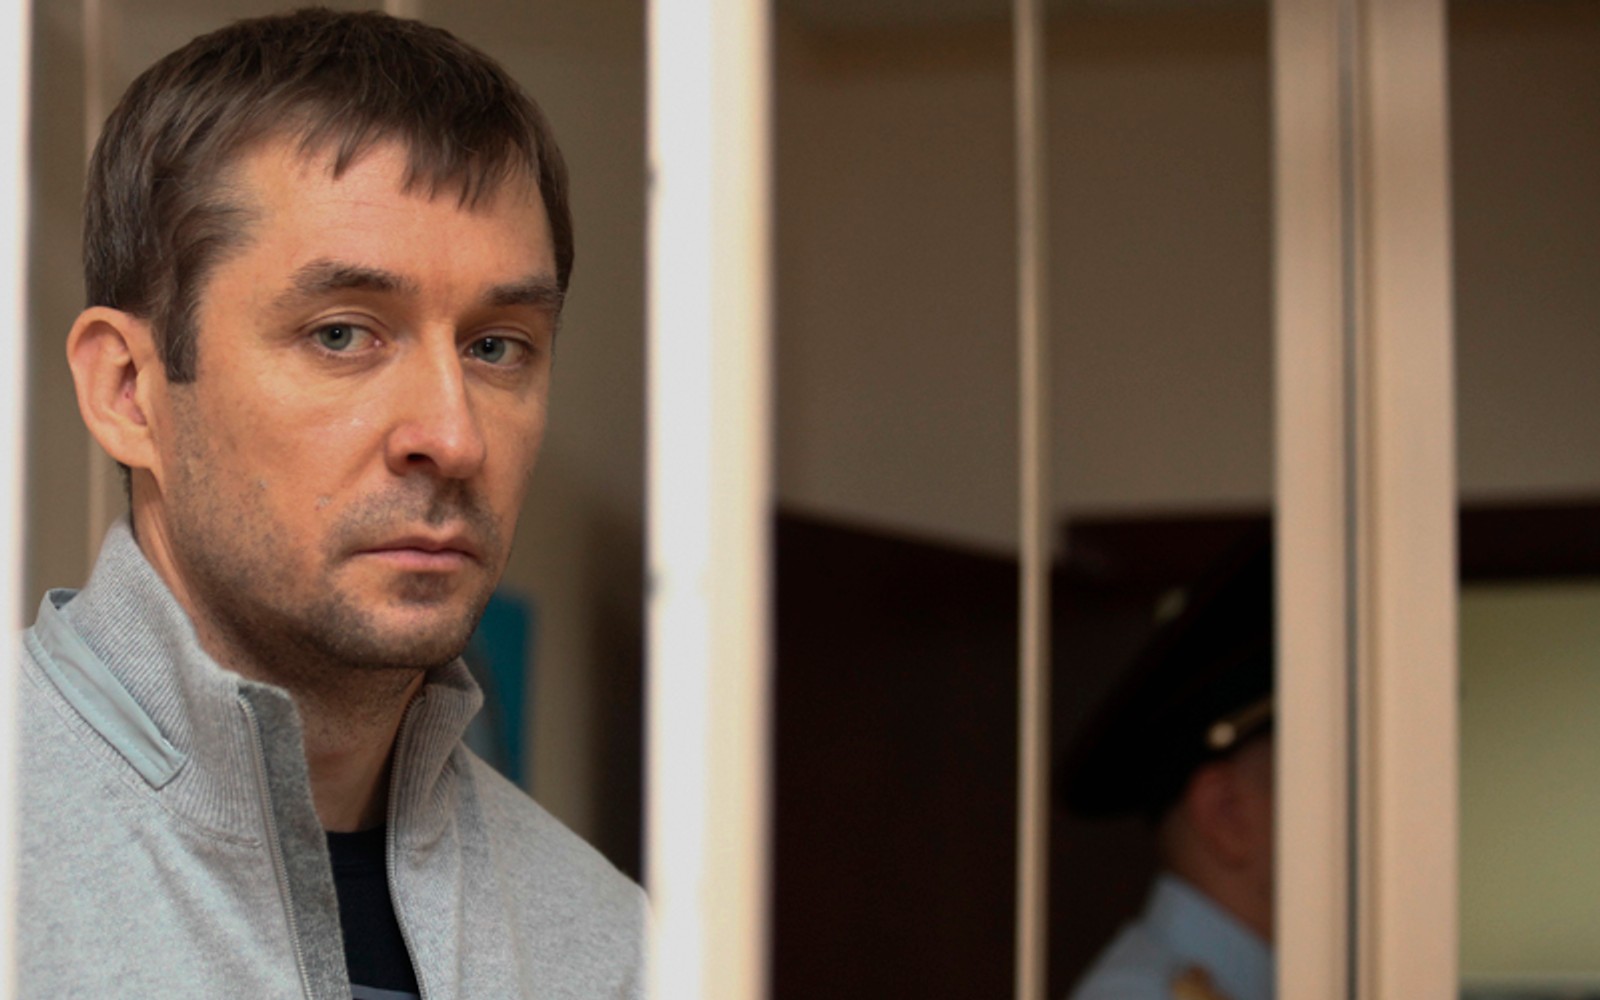 Гособвинение запросило 17 лет колонии строгого режима для экс-полковника Захарченко, обвиняемого в получении взяток на 1,5 млрд рублей 